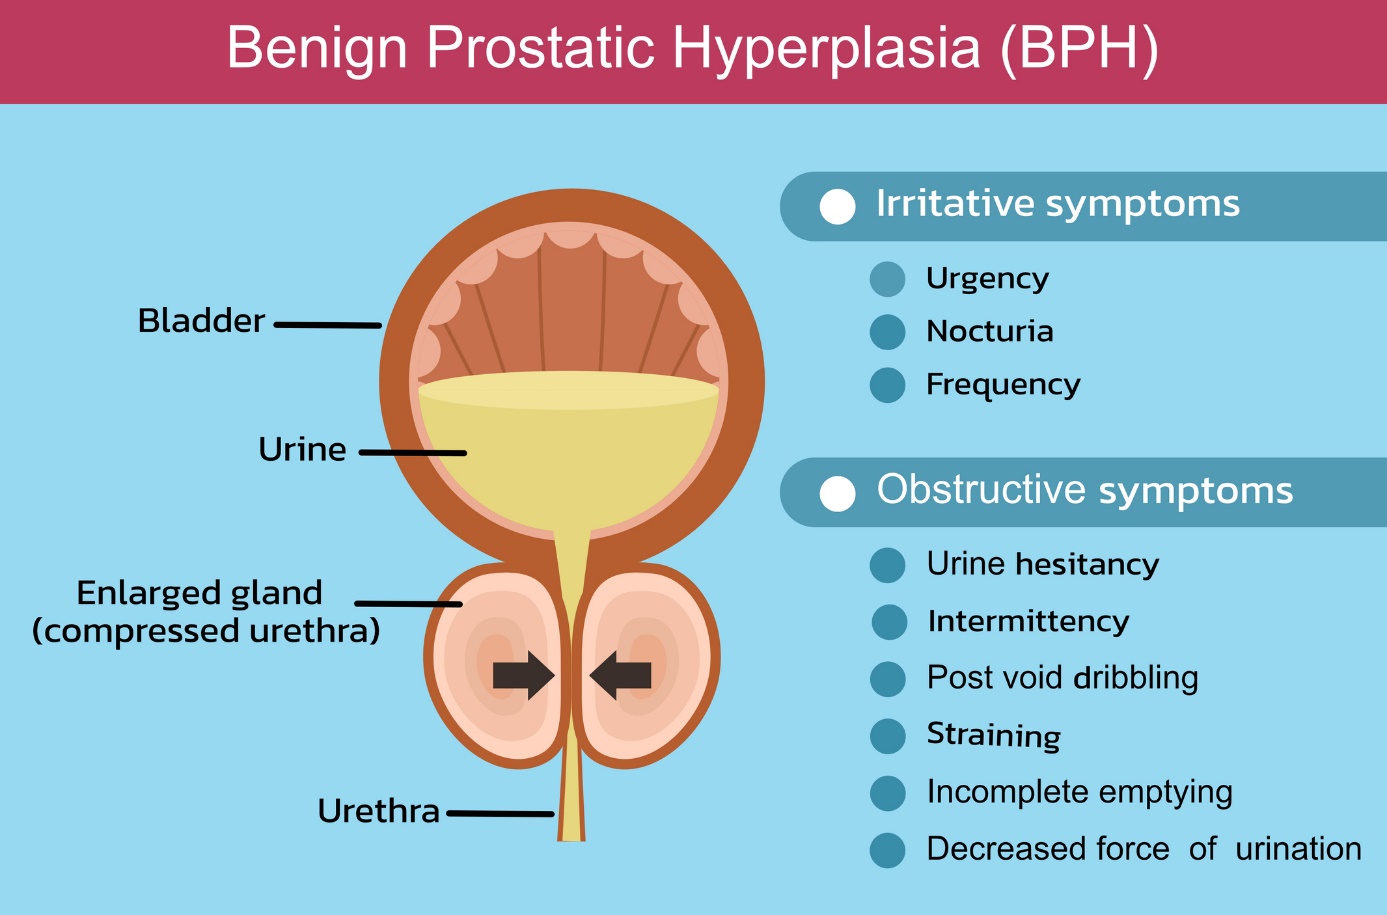 Benígna hyperplázia prostaty a opis v anglickom jazyku - močový mechúr, prostata, močová rúra stlačená pre hyperpláziu prostaty